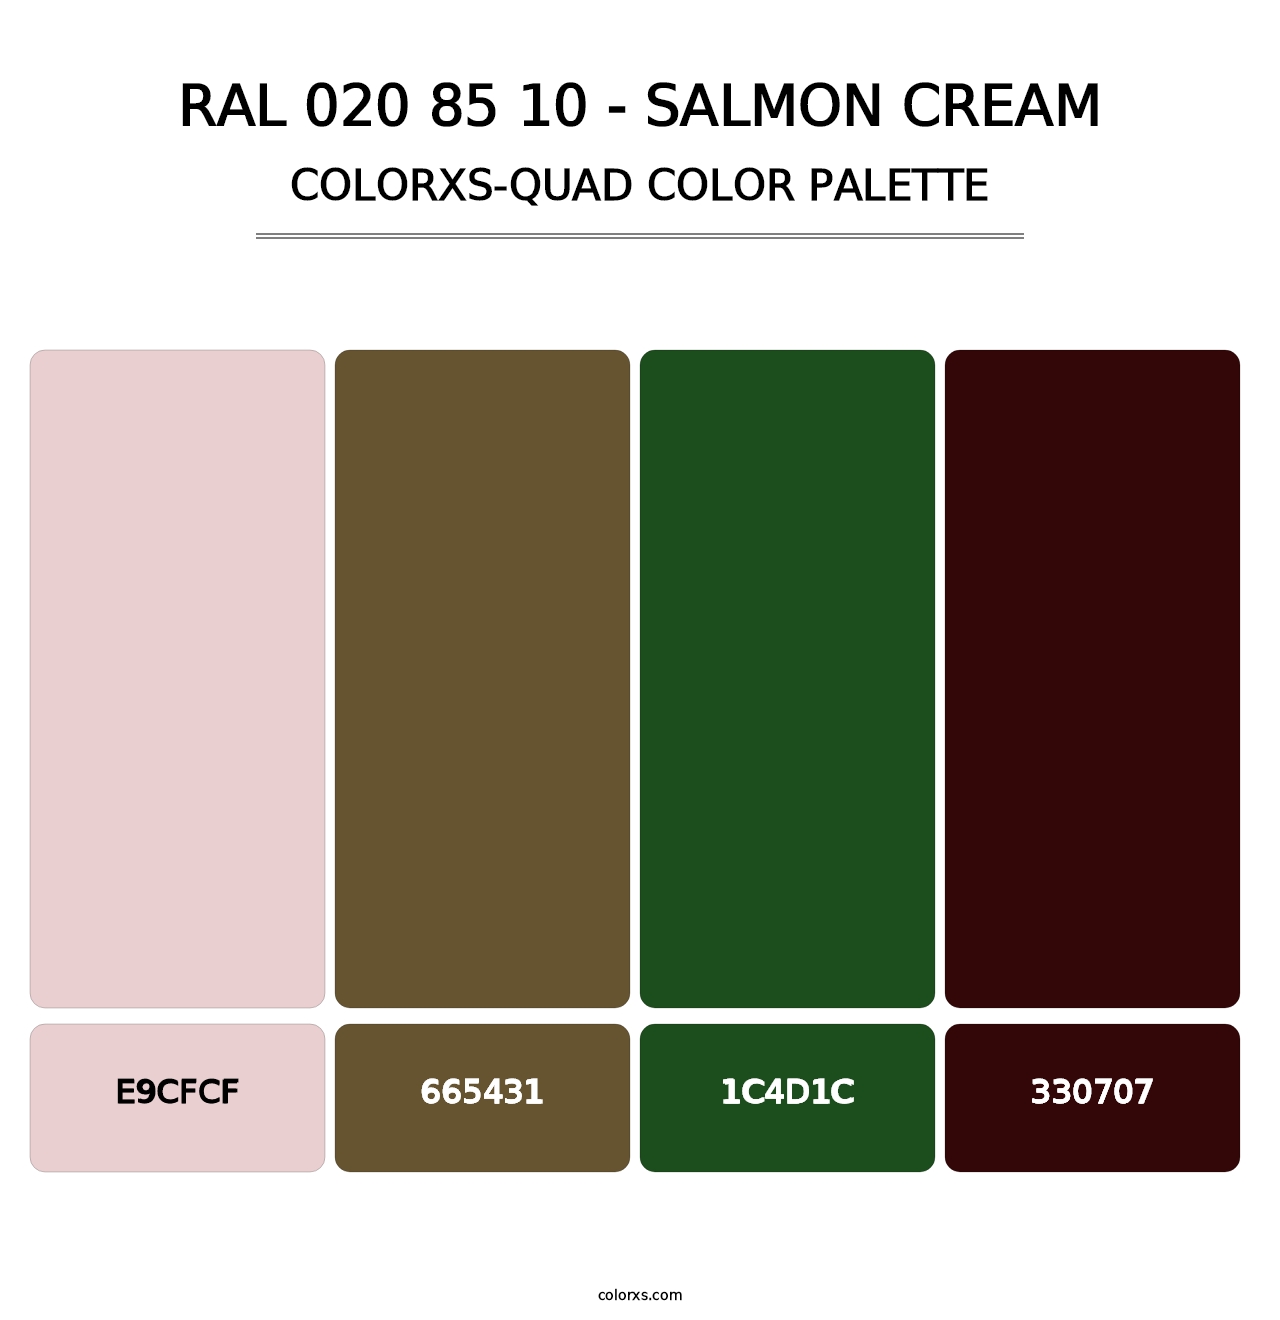 RAL 020 85 10 - Salmon Cream - Colorxs Quad Palette